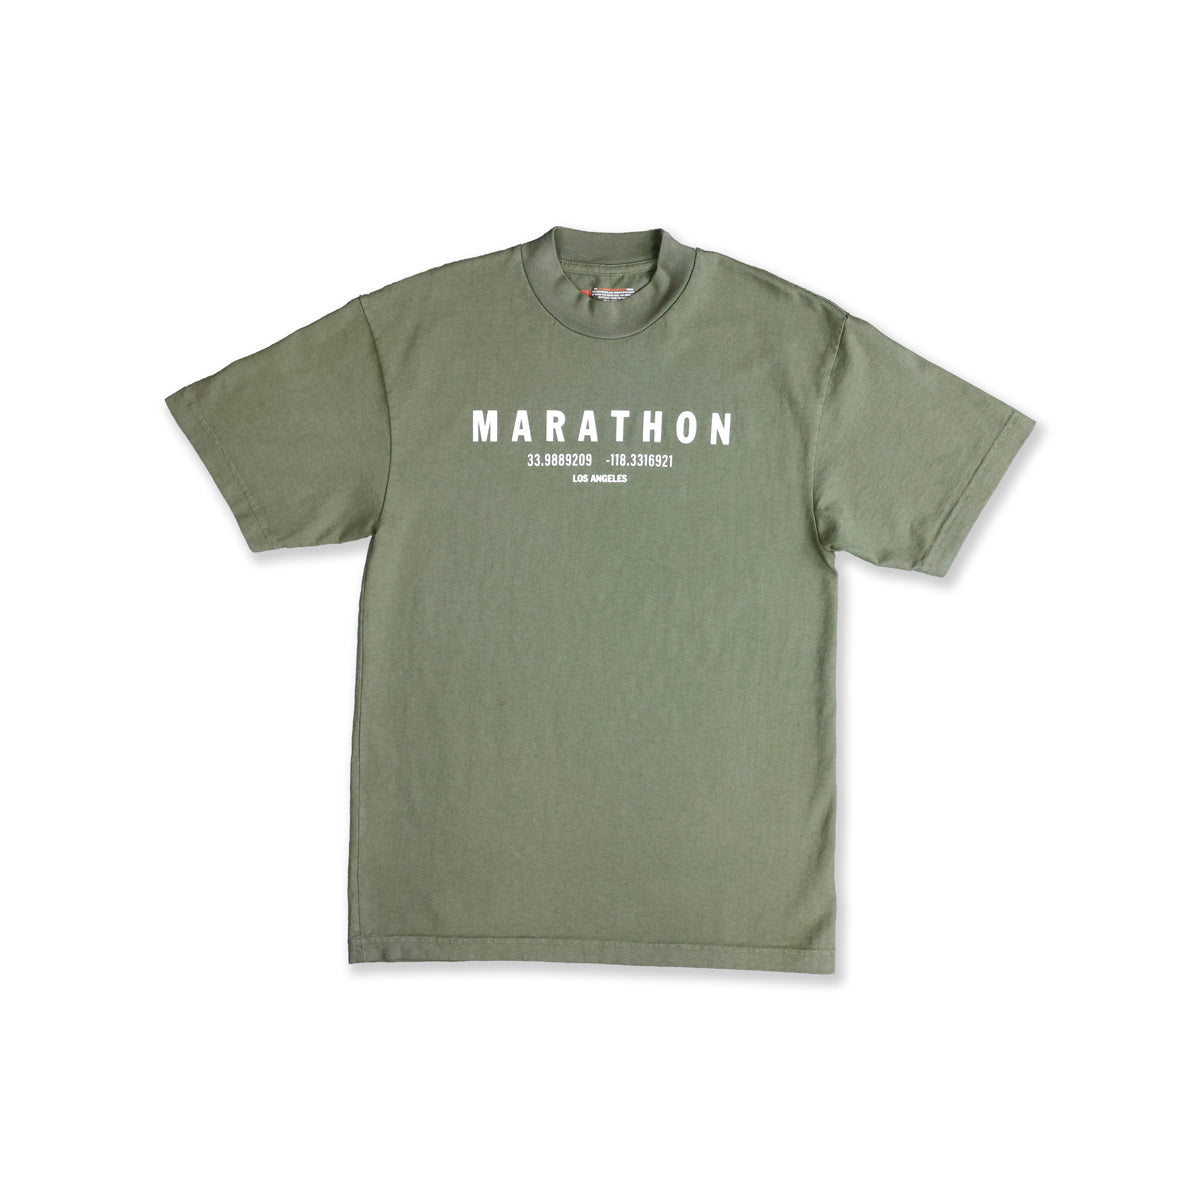 The Marathon Clothing, Shirts